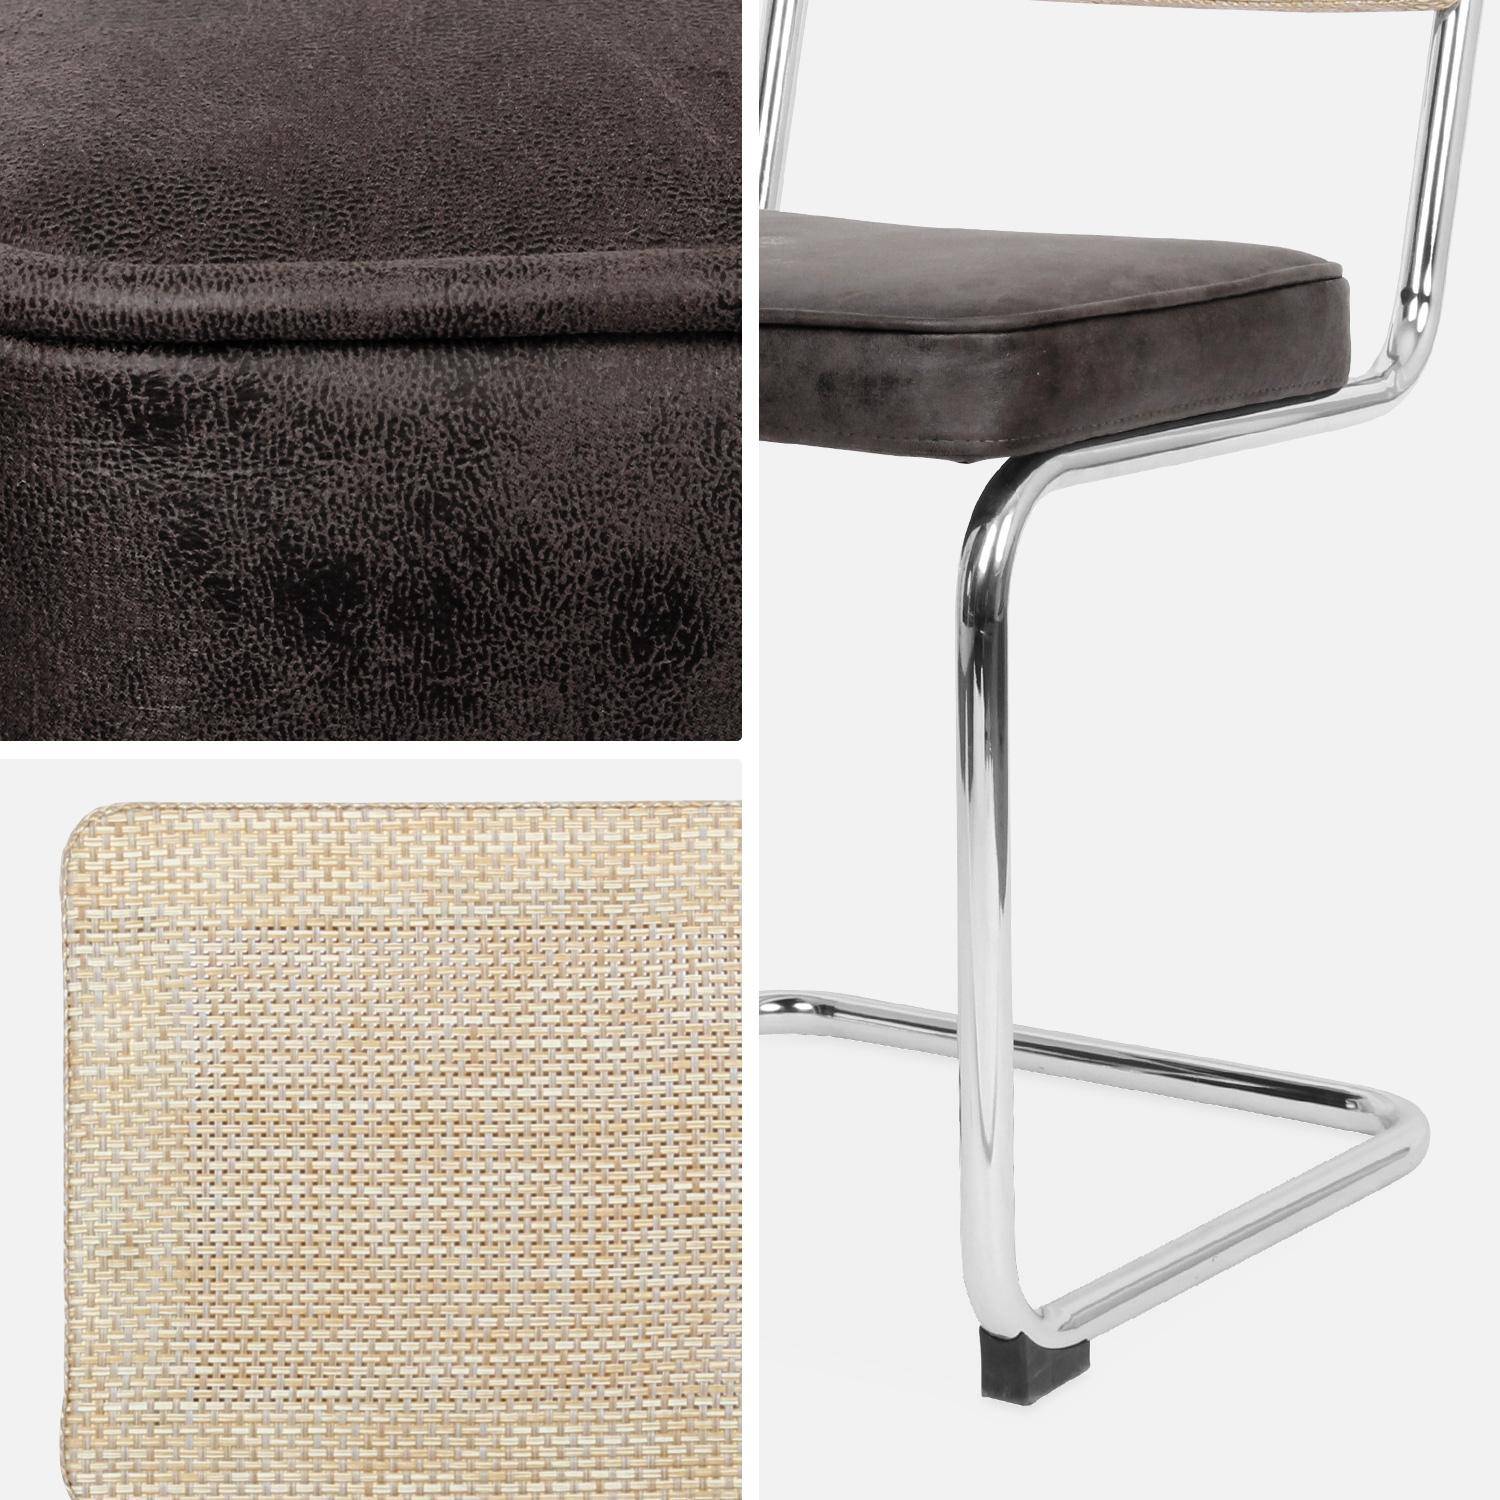 2 cadeiras cantilever - Maja - tecido preto e resina com efeito de vime, 46 x 54,5 x 84,5 cm Photo8